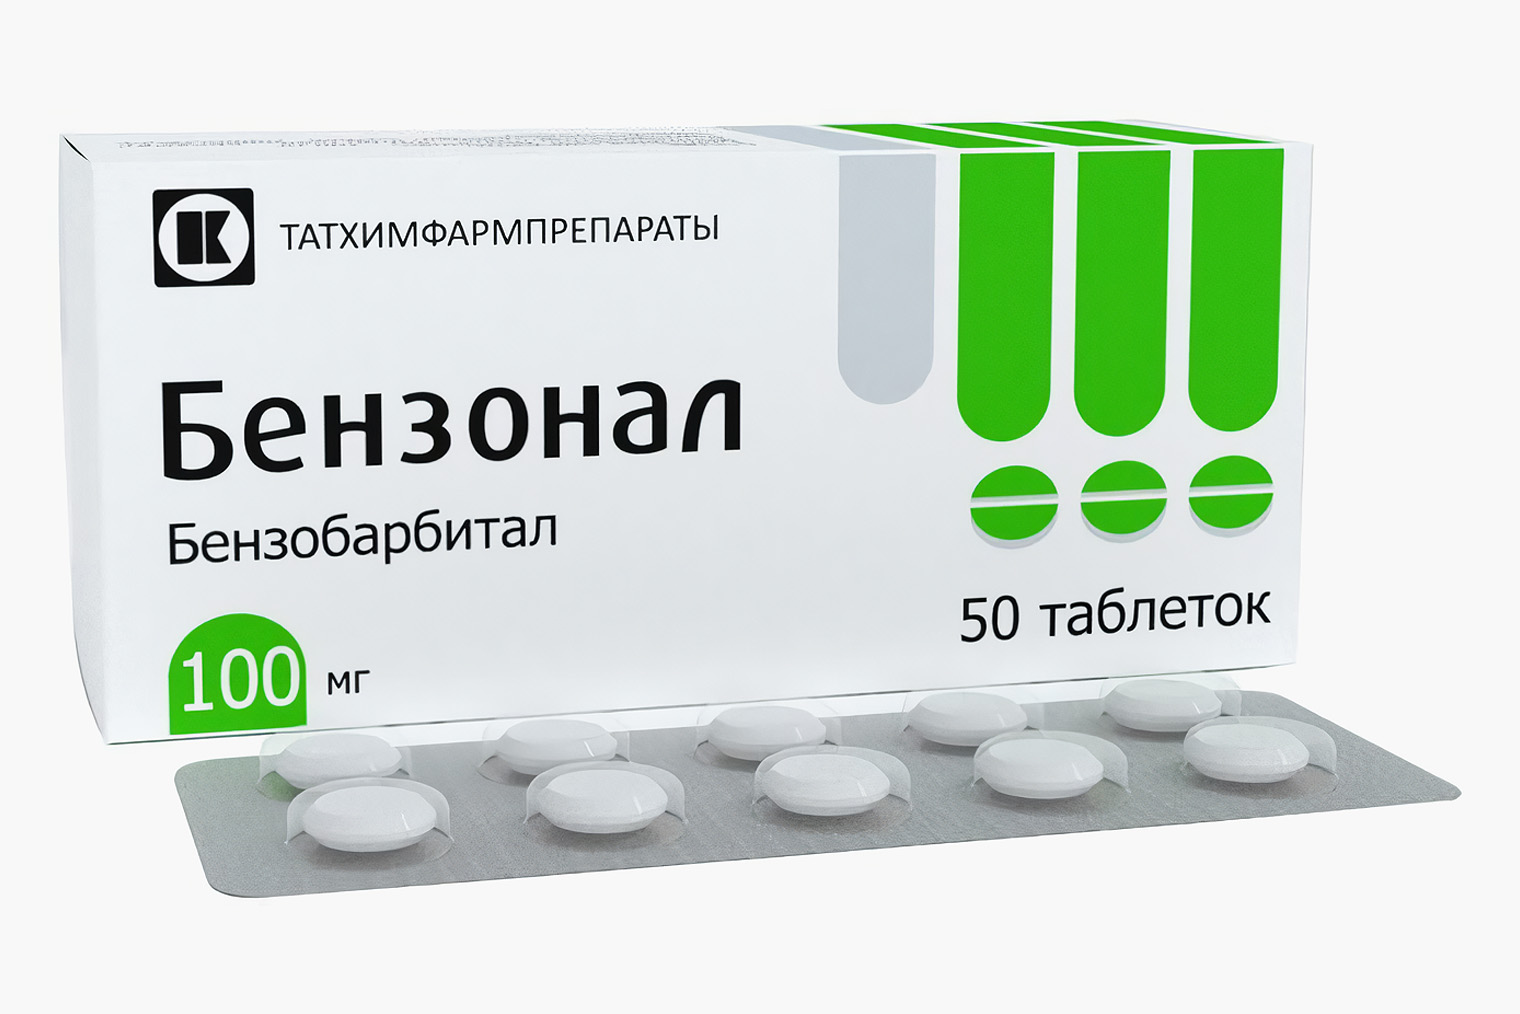 Стоимость упаковки из 50 таблеток по 100 мг начинается со 125 ₽. Источник: planetazdorovo.ru